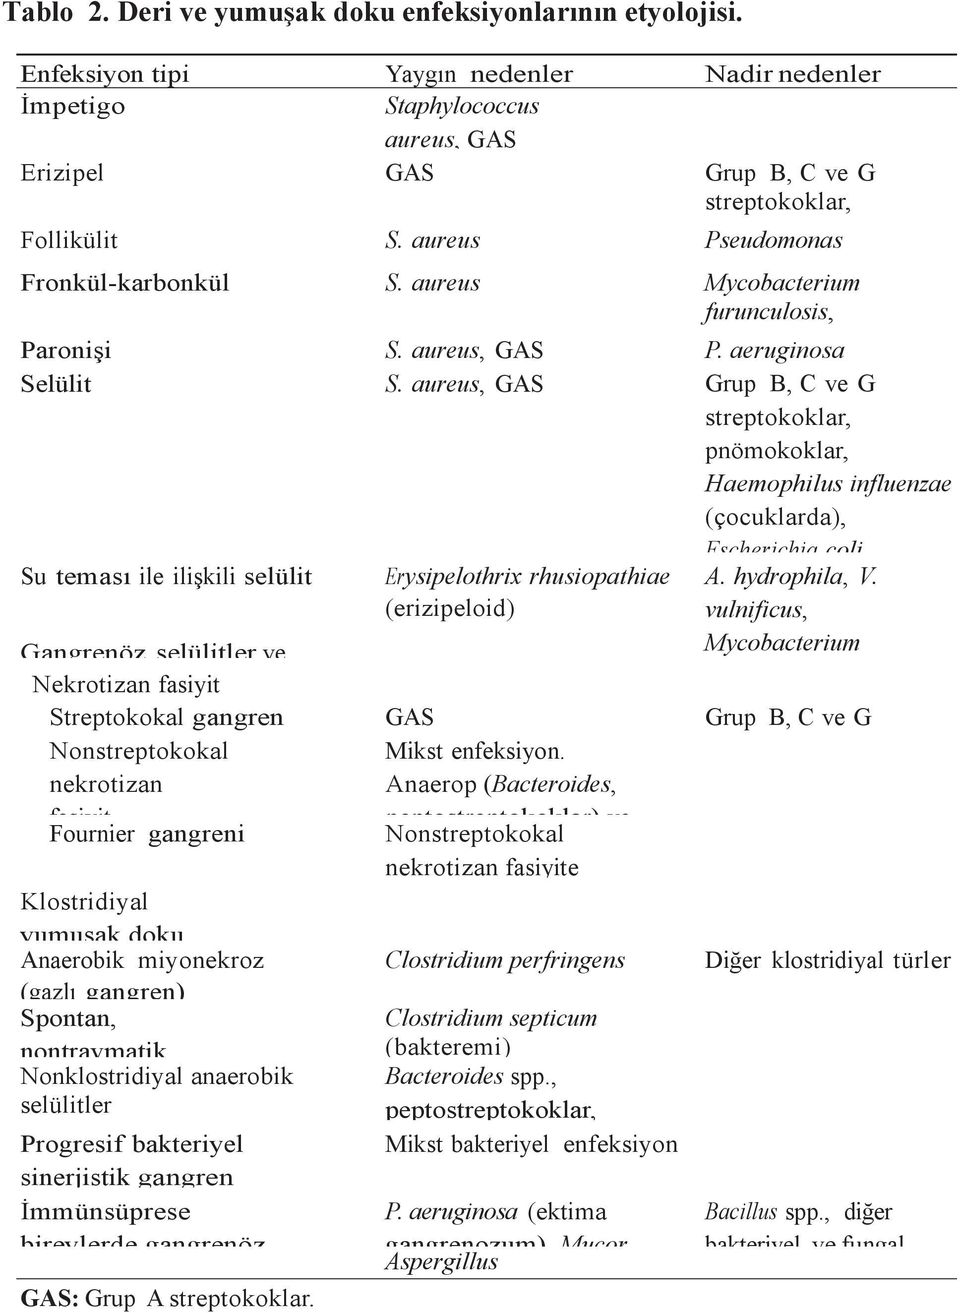 aureus, GAS Grup B, C ve G streptokoklar, pnömokoklar, Haemophilus influenzae (çocuklarda), Escherichia coli, Su teması ile ilişkili selülit Gangrenöz selülitler ve Erysipelothrix rhusiopathiae